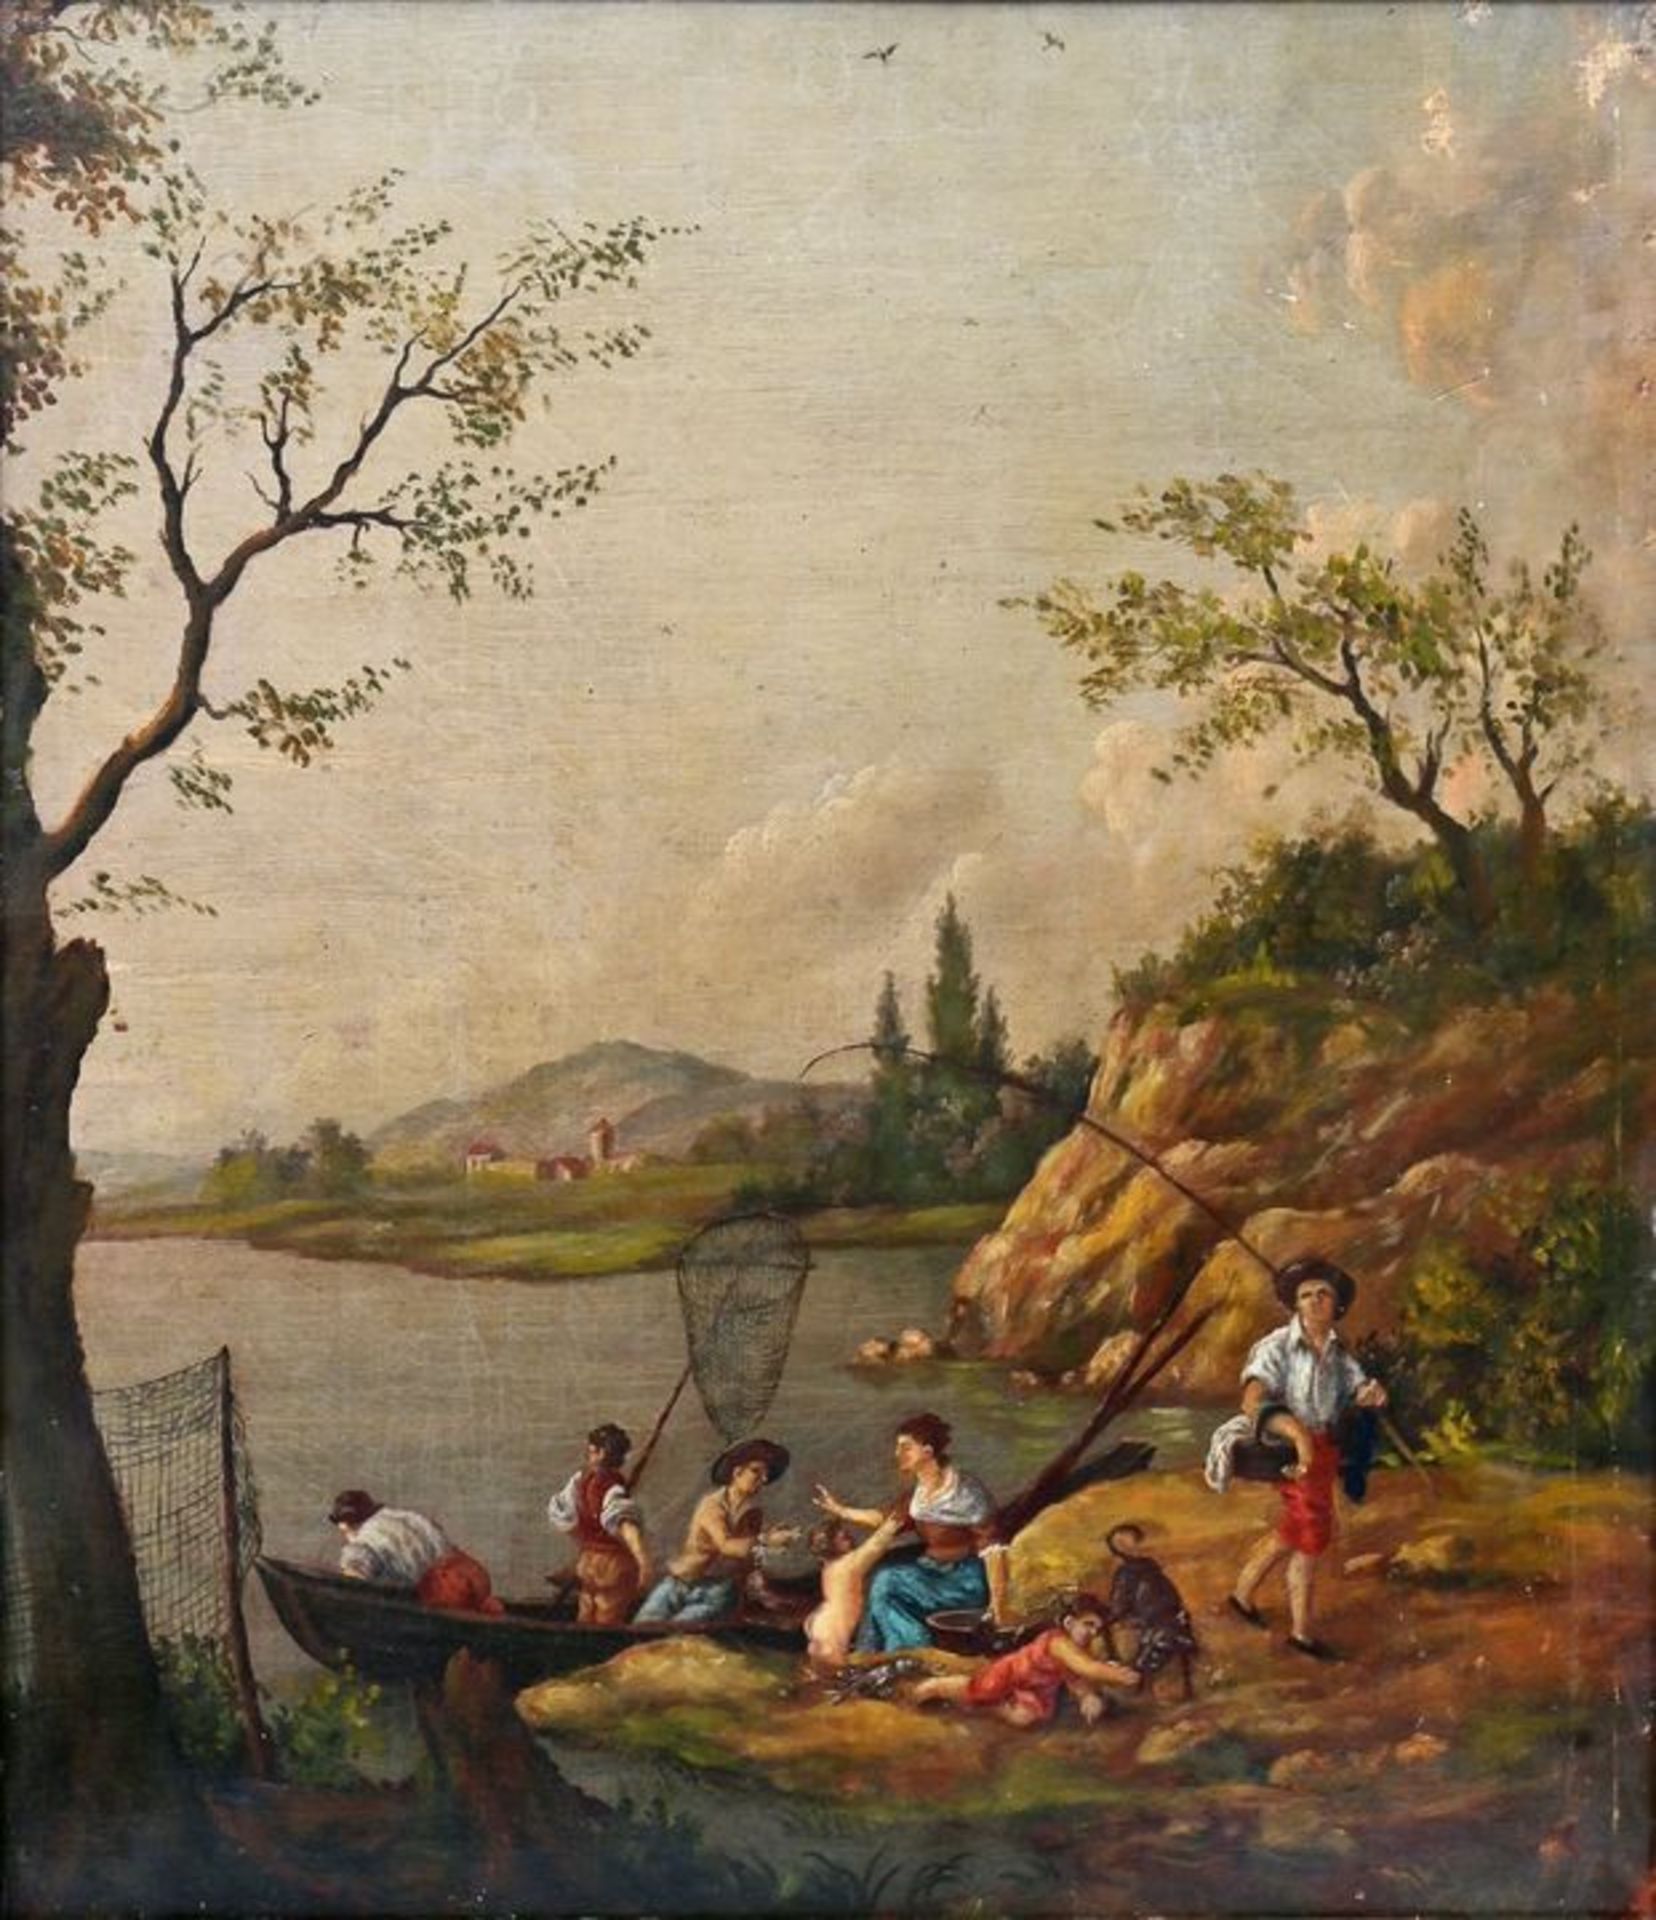 unbekannt, Szenische Darstellung / unknown, landscape with fishing family